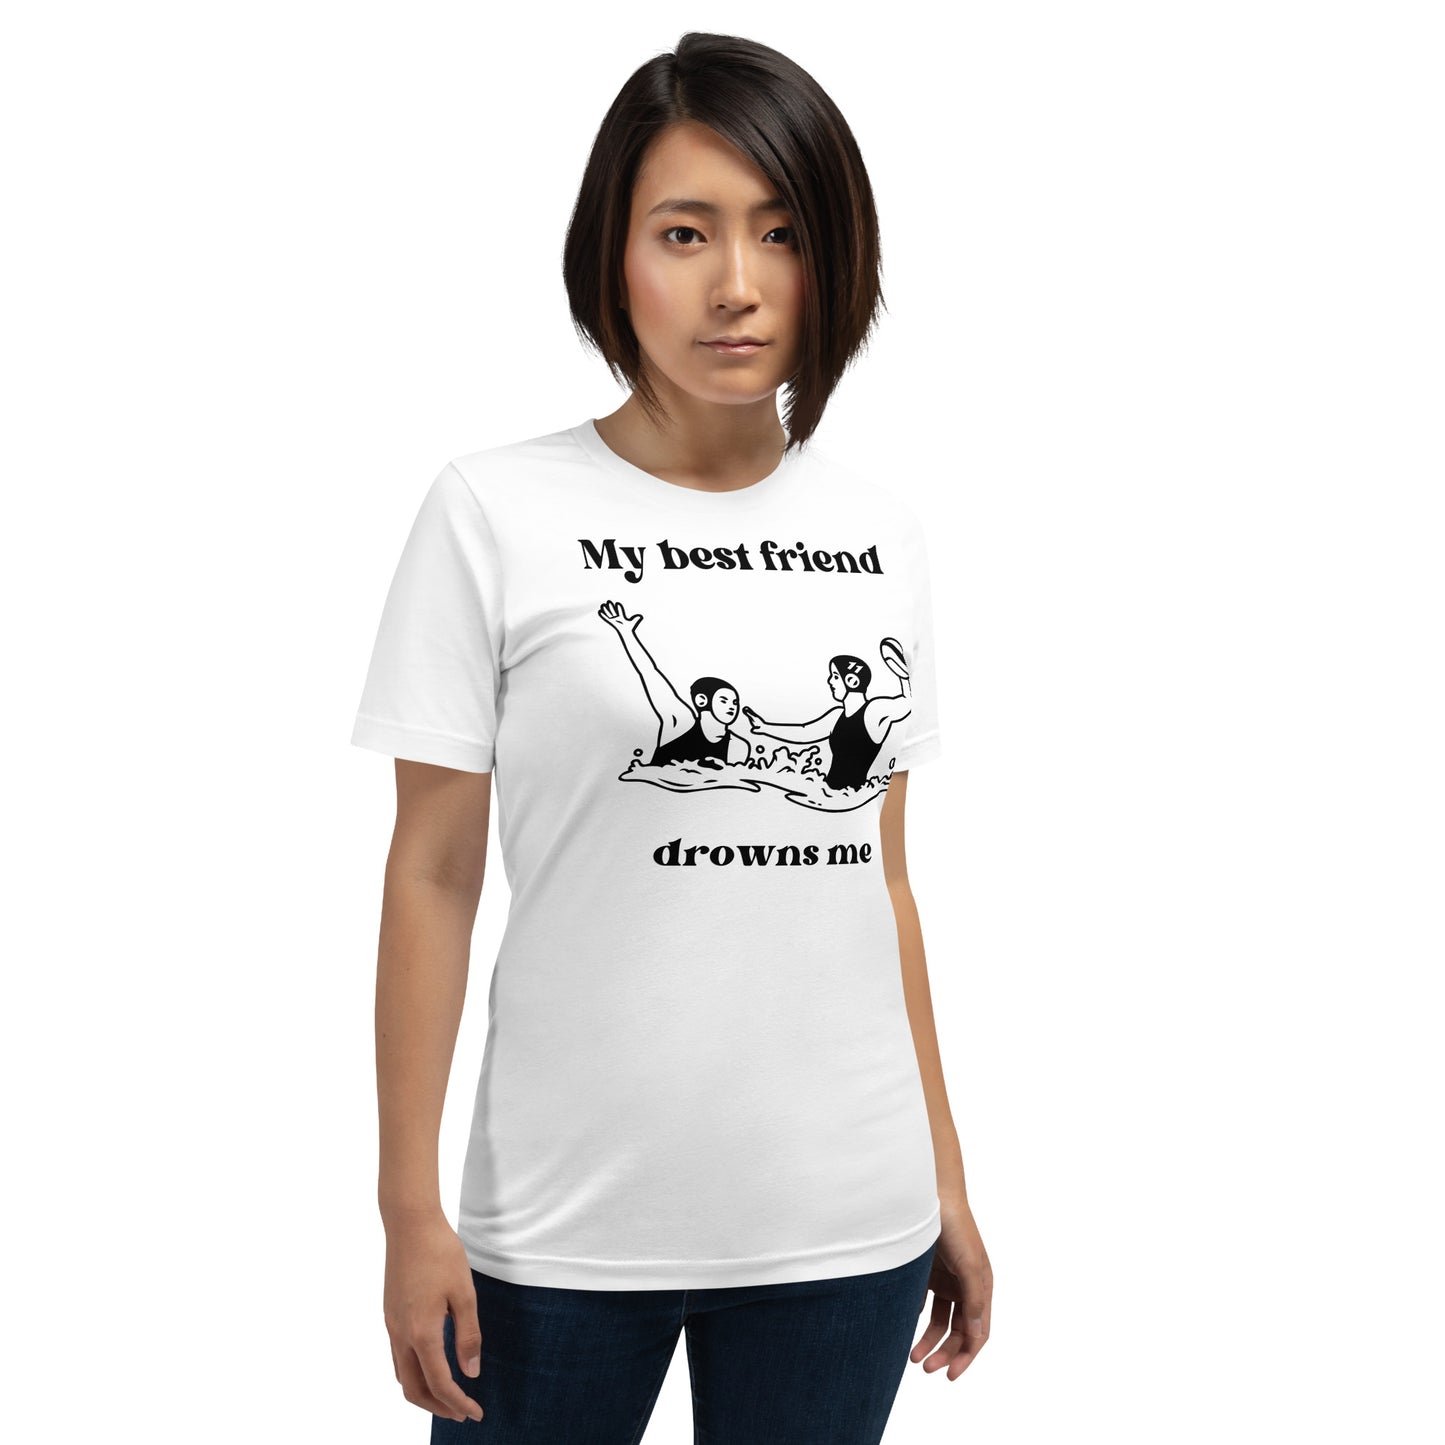 My Best Friend Drowns Me - Unisex Soft T-shirt - Bella Canvas 3001